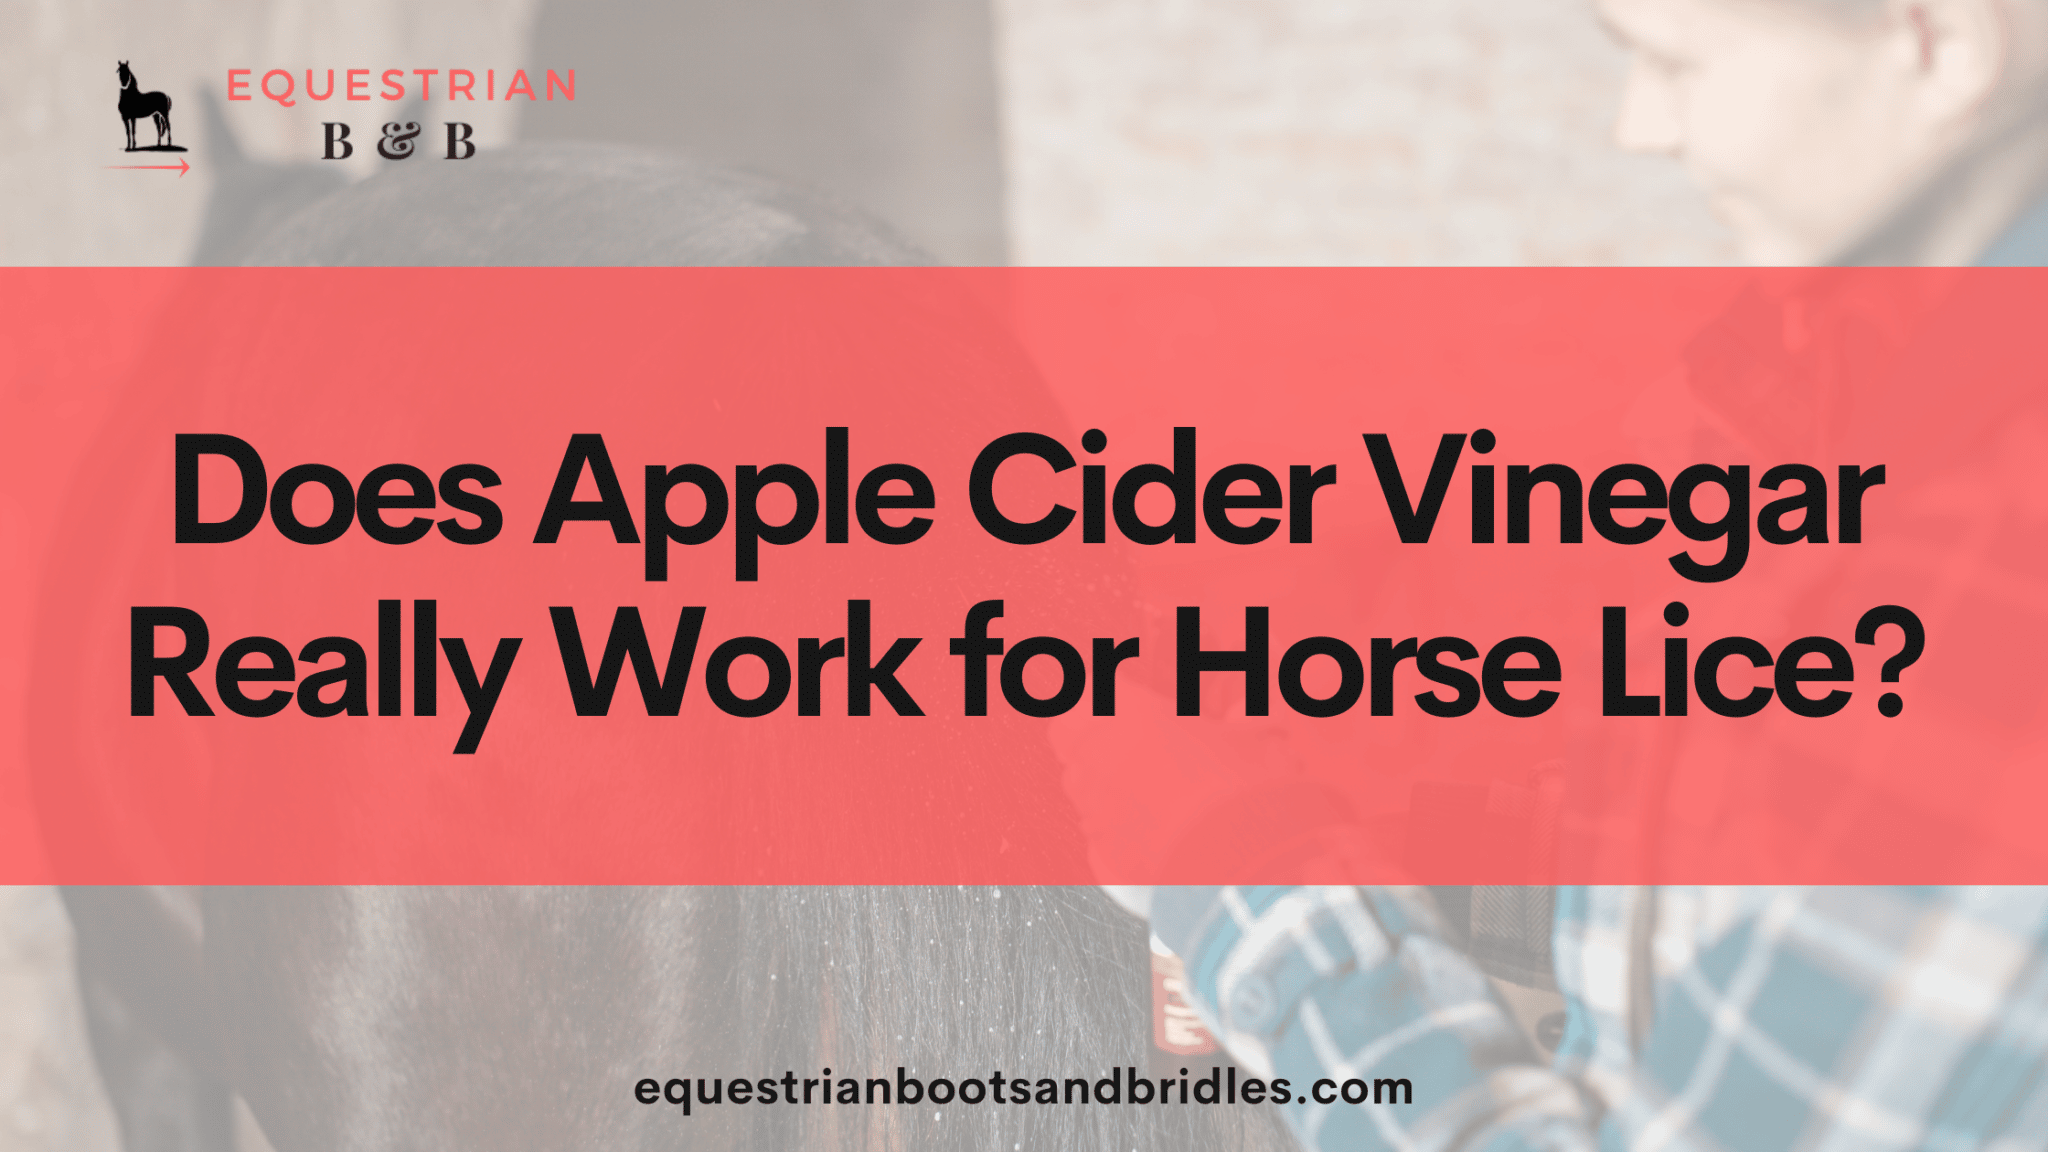 apple cider vinegar for horse lice on equestrianbootsandbridles.com